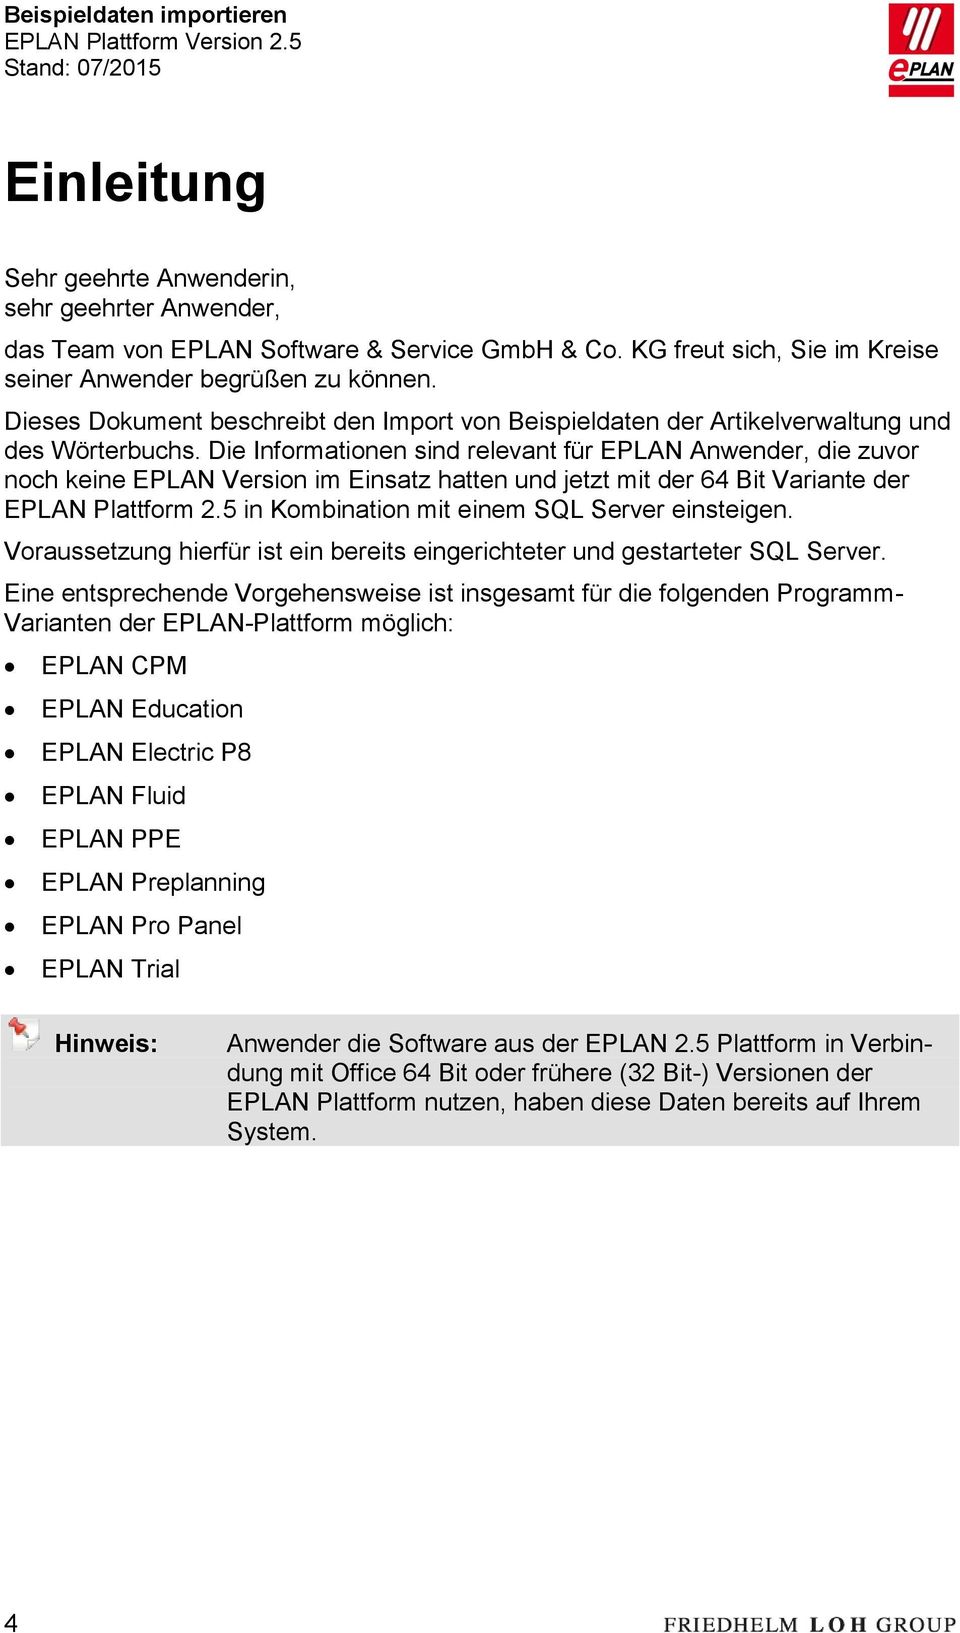 Die Informationen sind relevant für EPLAN Anwender, die zuvor noch keine EPLAN Version im Einsatz hatten und jetzt mit der 64 Bit Variante der EPLAN Plattform 2.